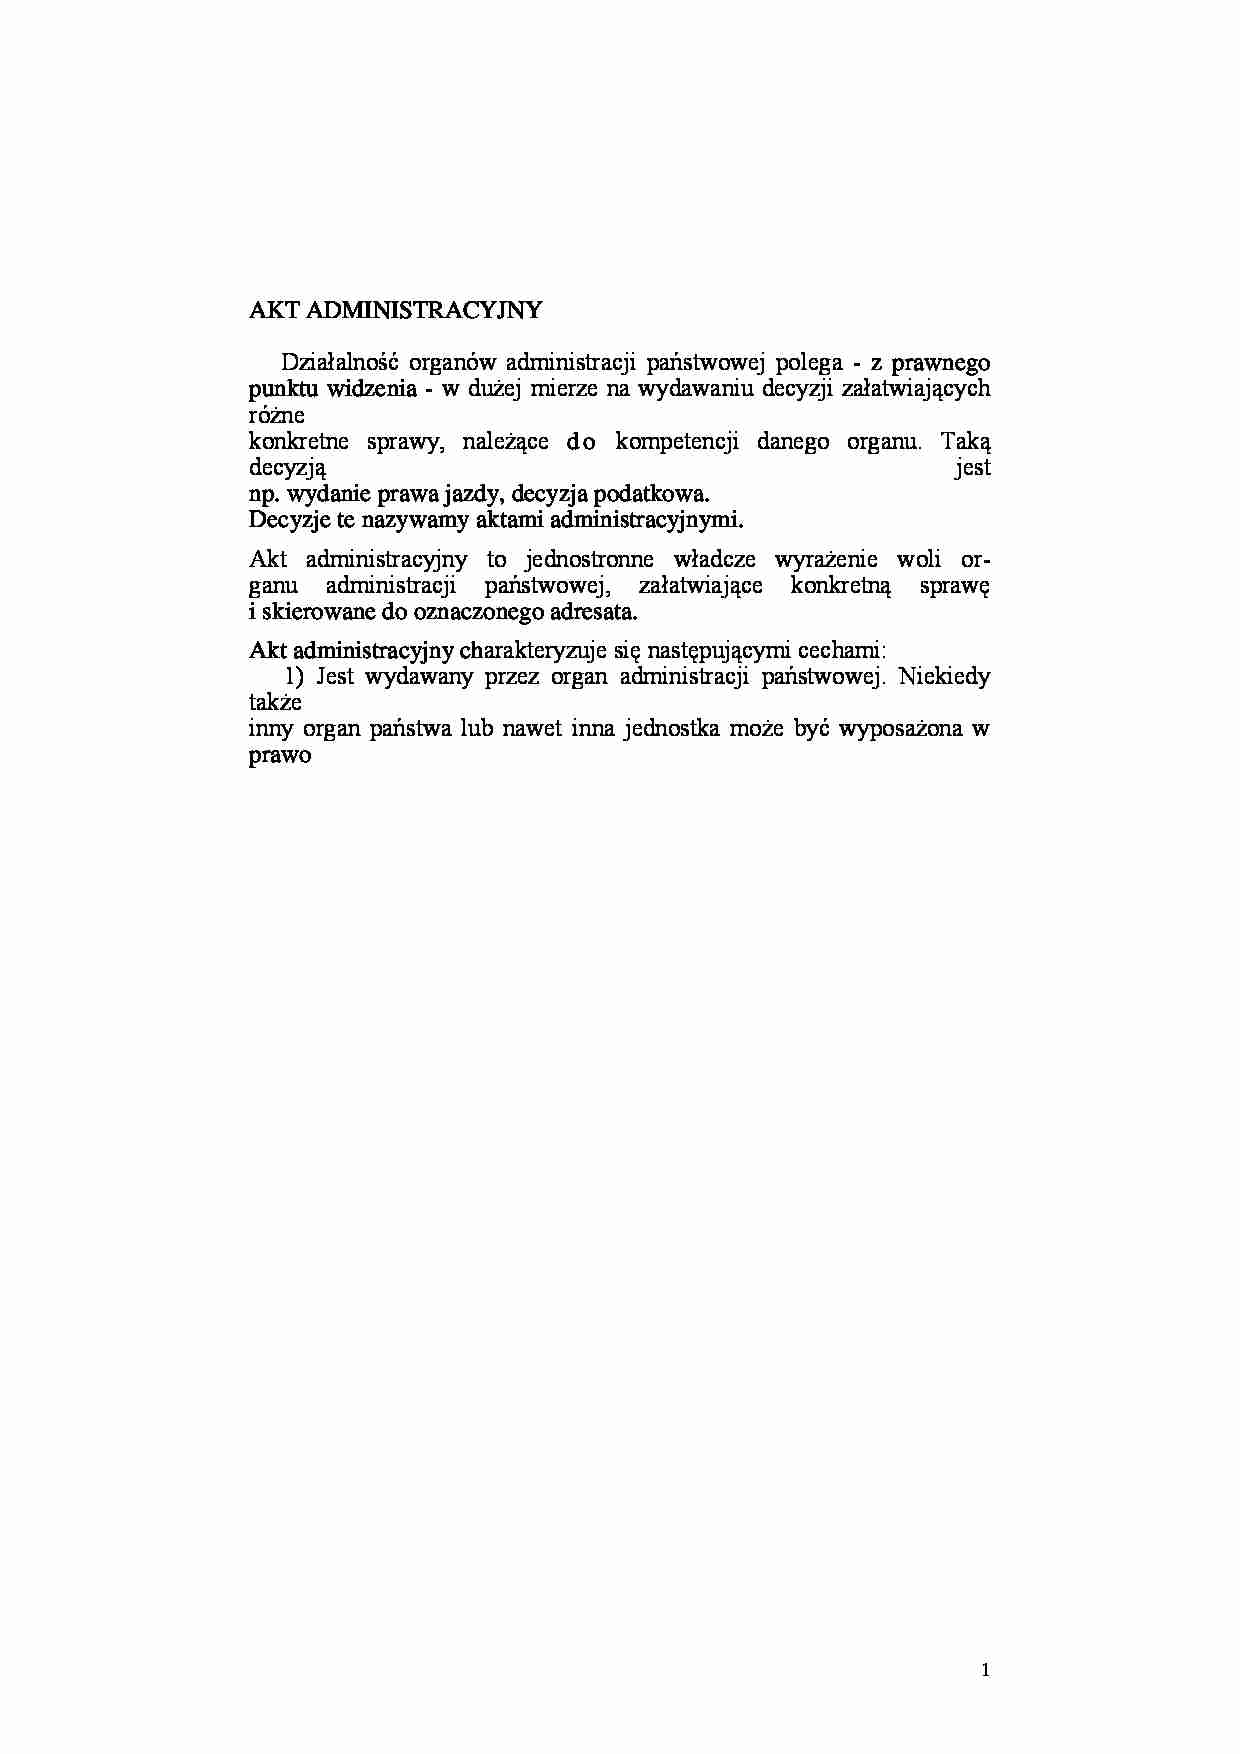 Akt administracyjny - definicja - strona 1